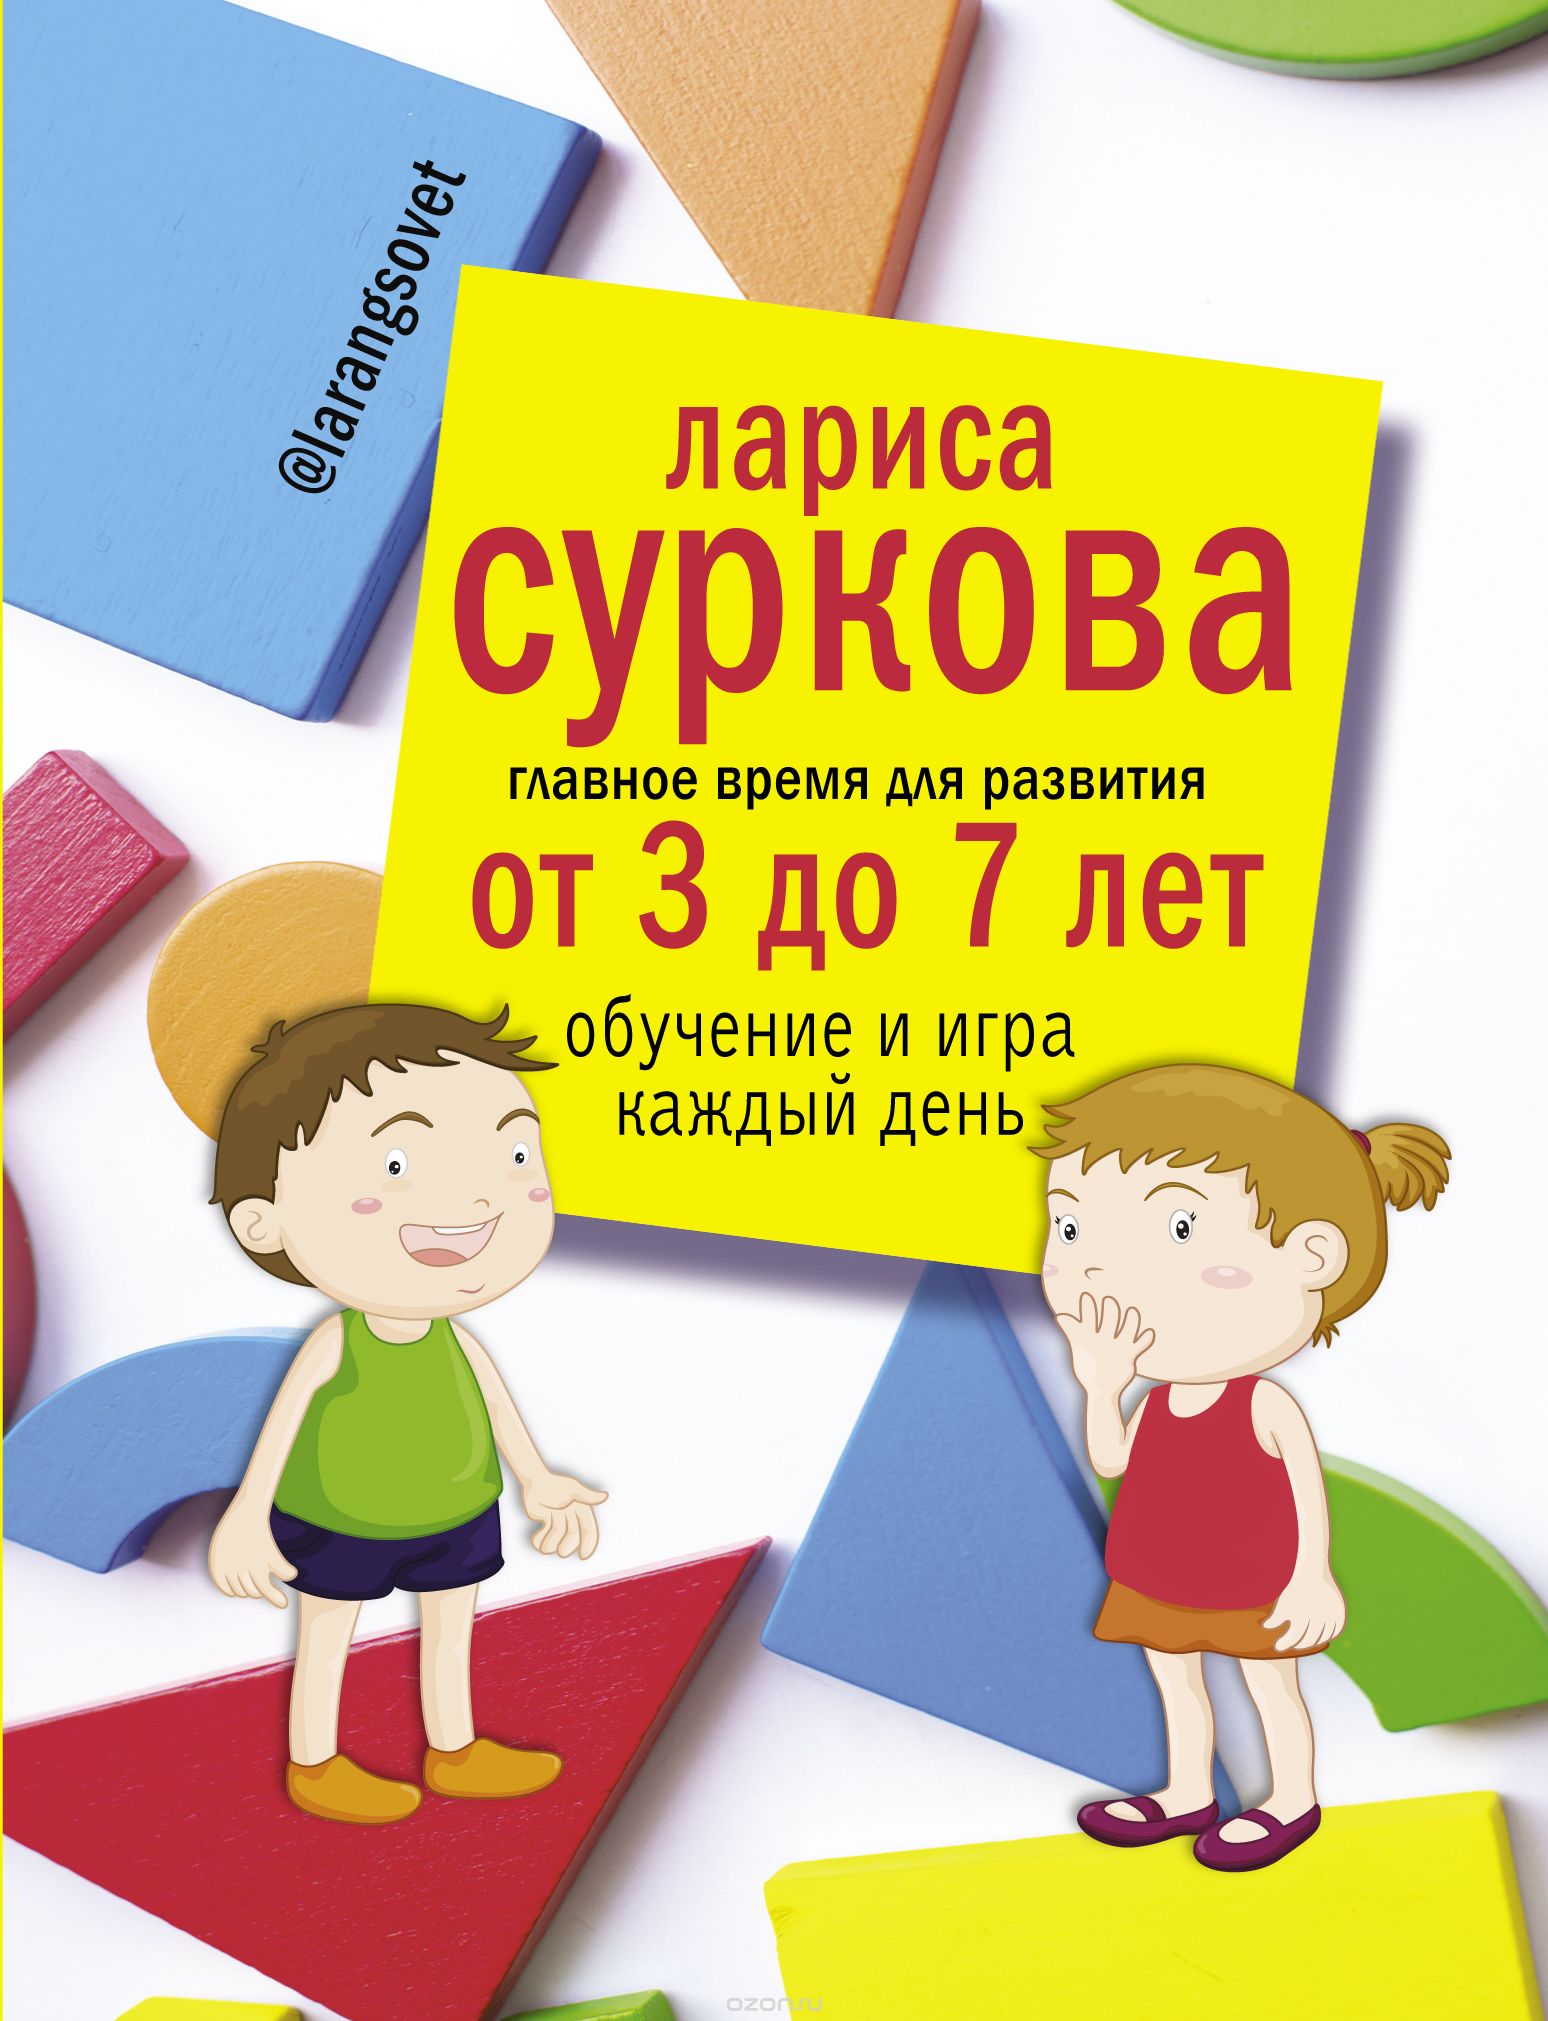 Скачать книгу "Главное время для развития от 3 до 7 лет. Обучение и игра каждый день, Суркова  Лариса  Михайловна"